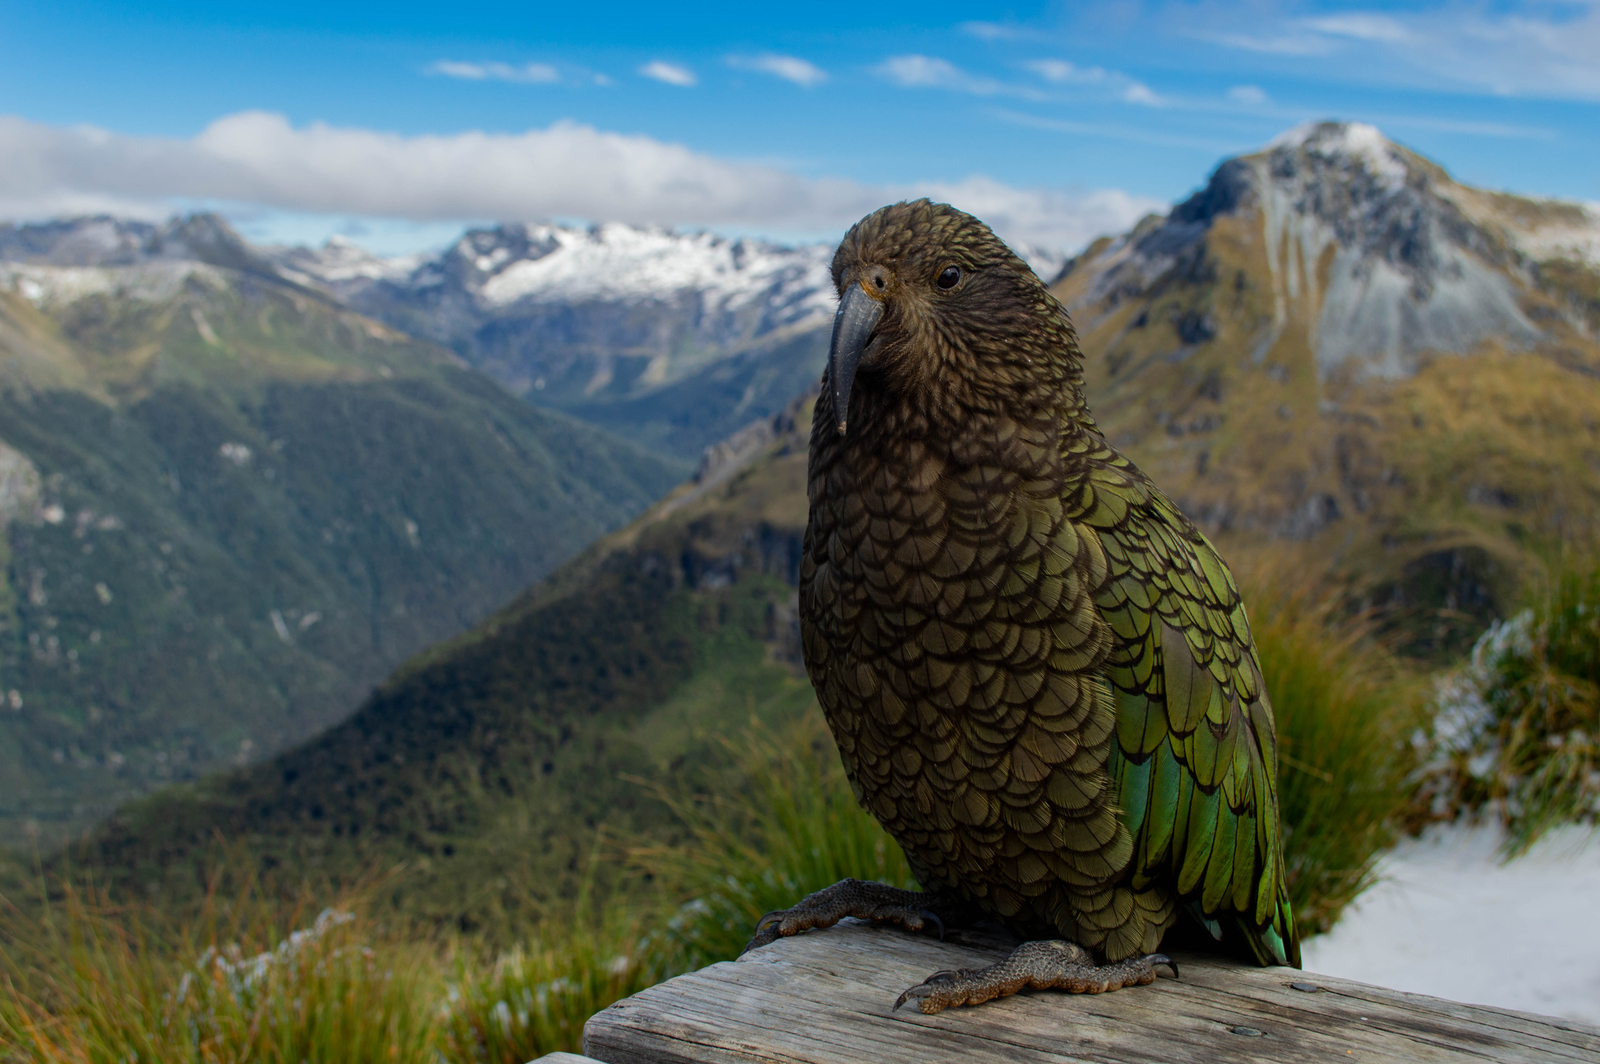 Kea parrot in front of mountain range; Kepler Track, New Zealand. Image Credit: © Jannikmohr | Dreamstime.com.